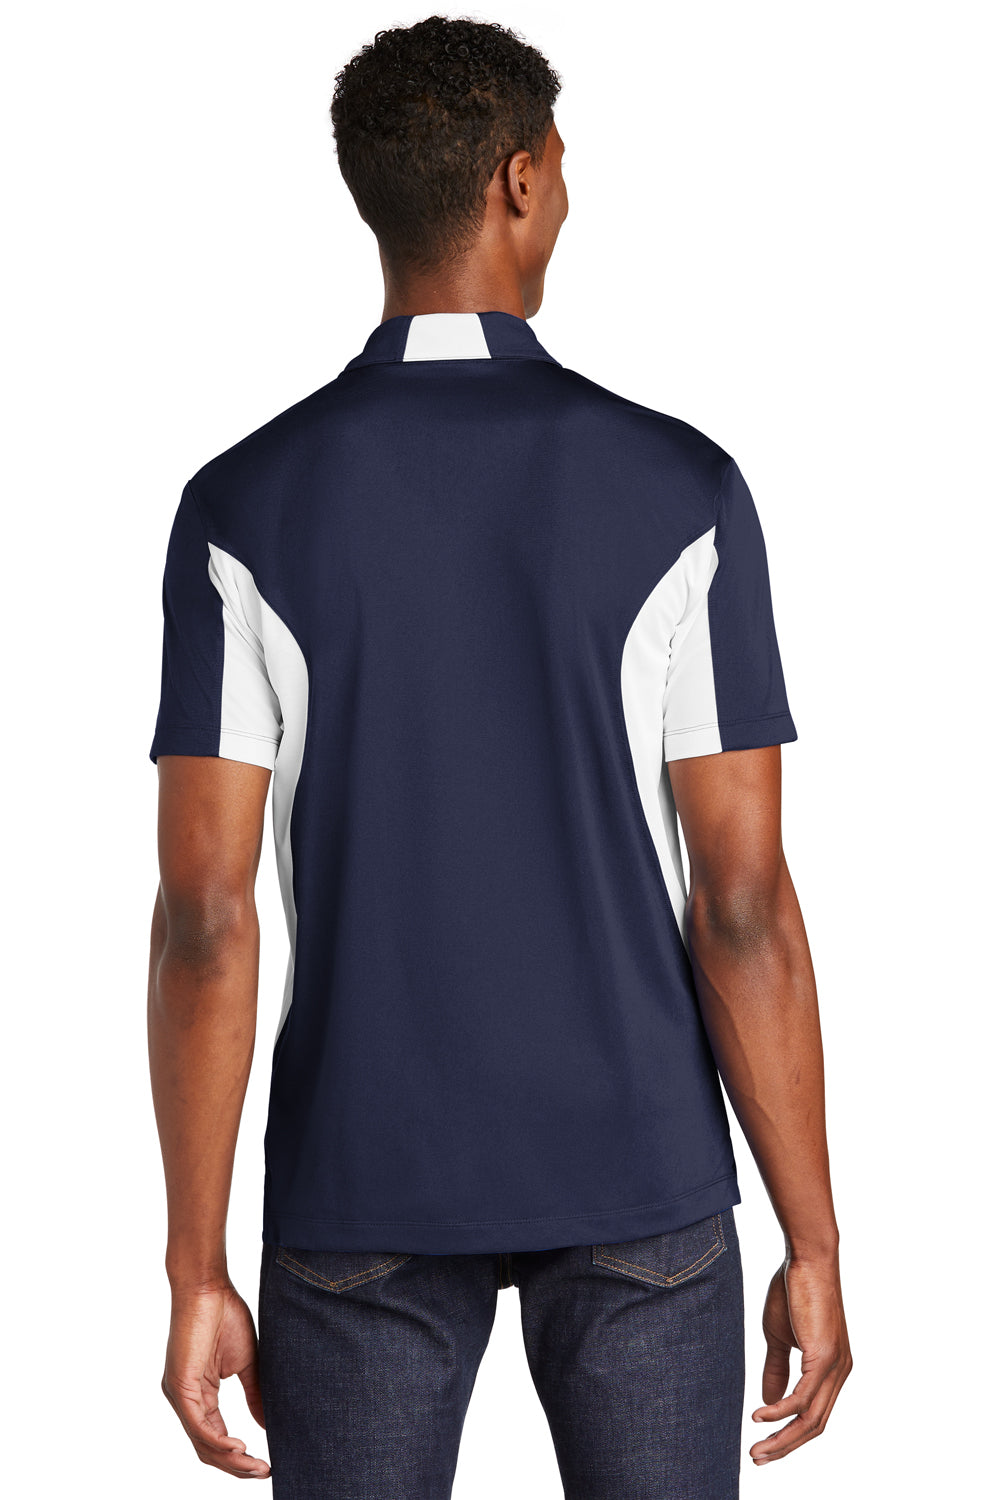 Sport-Tek ST655 Mens Sport-Wick Moisture Wicking Short Sleeve Polo Shirt Navy Blue/White Back